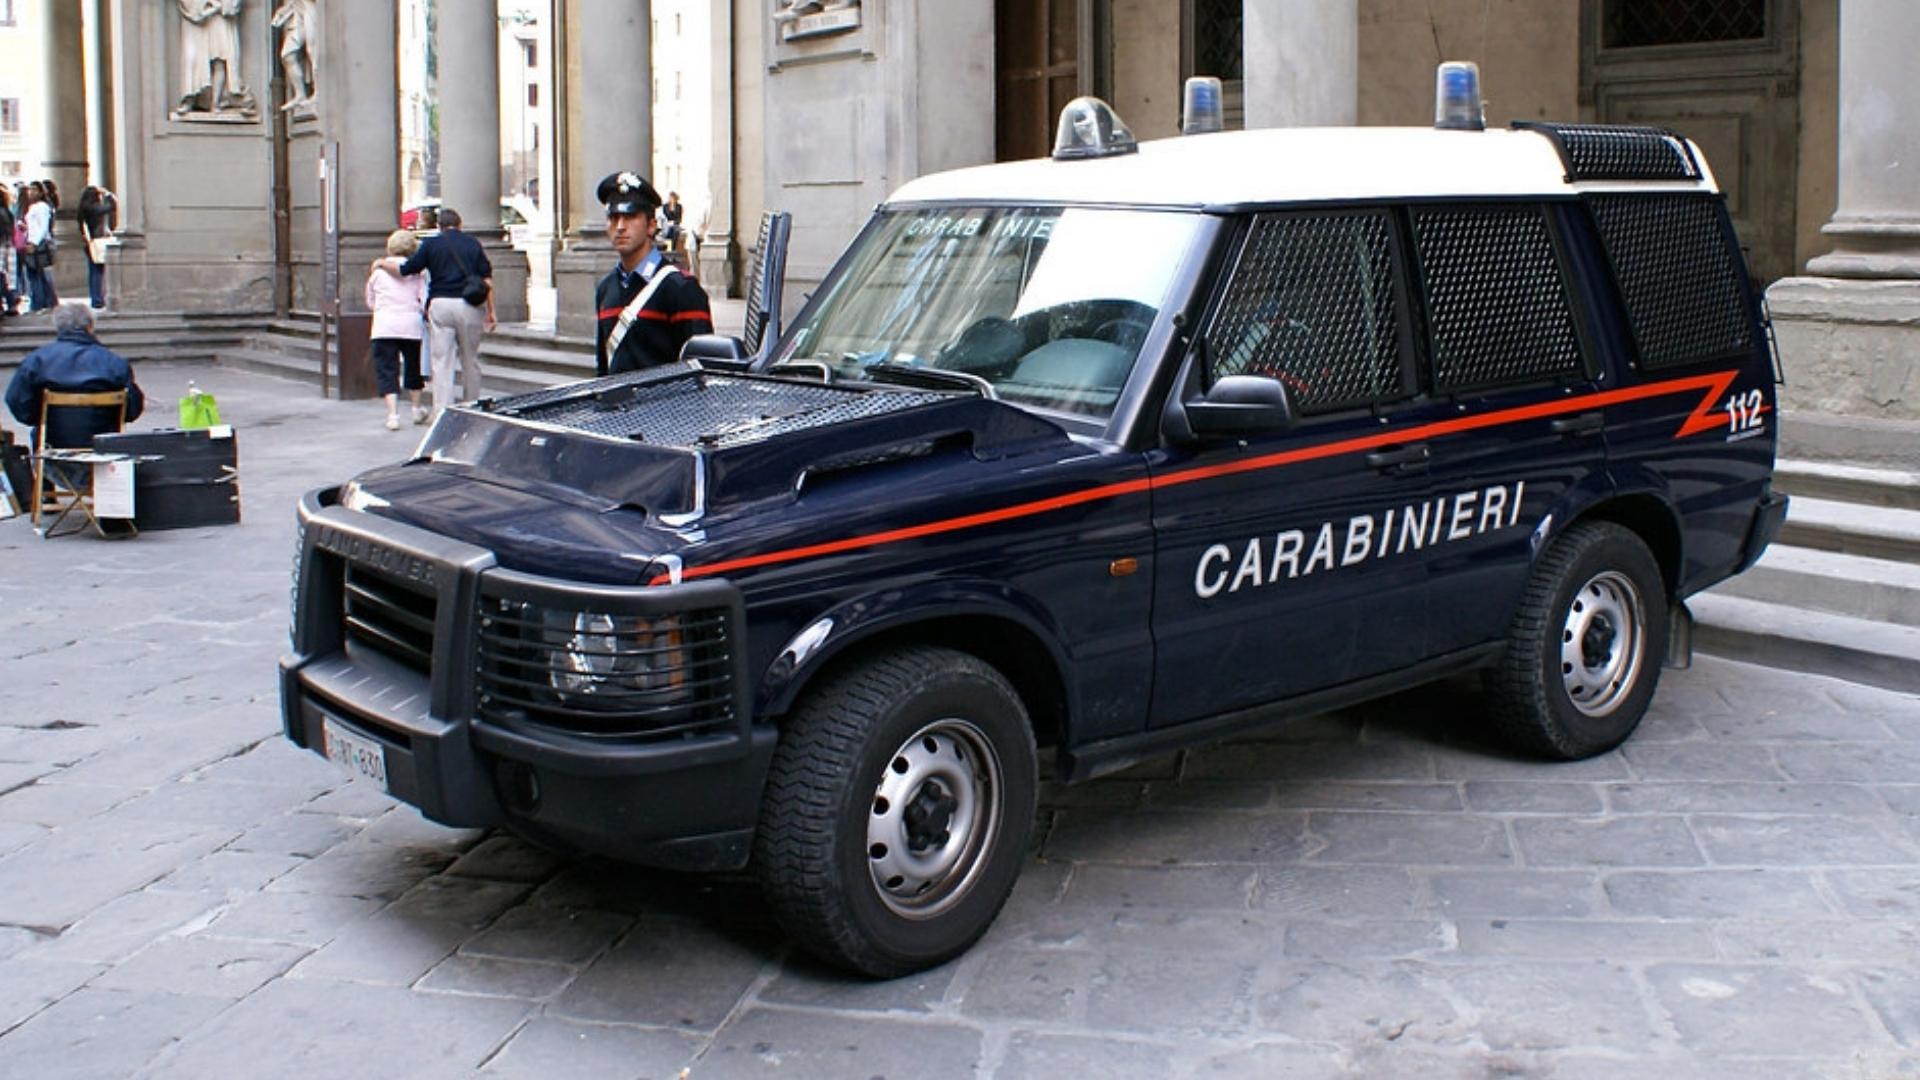 Patrulla de Carabinieri, policía de Italia